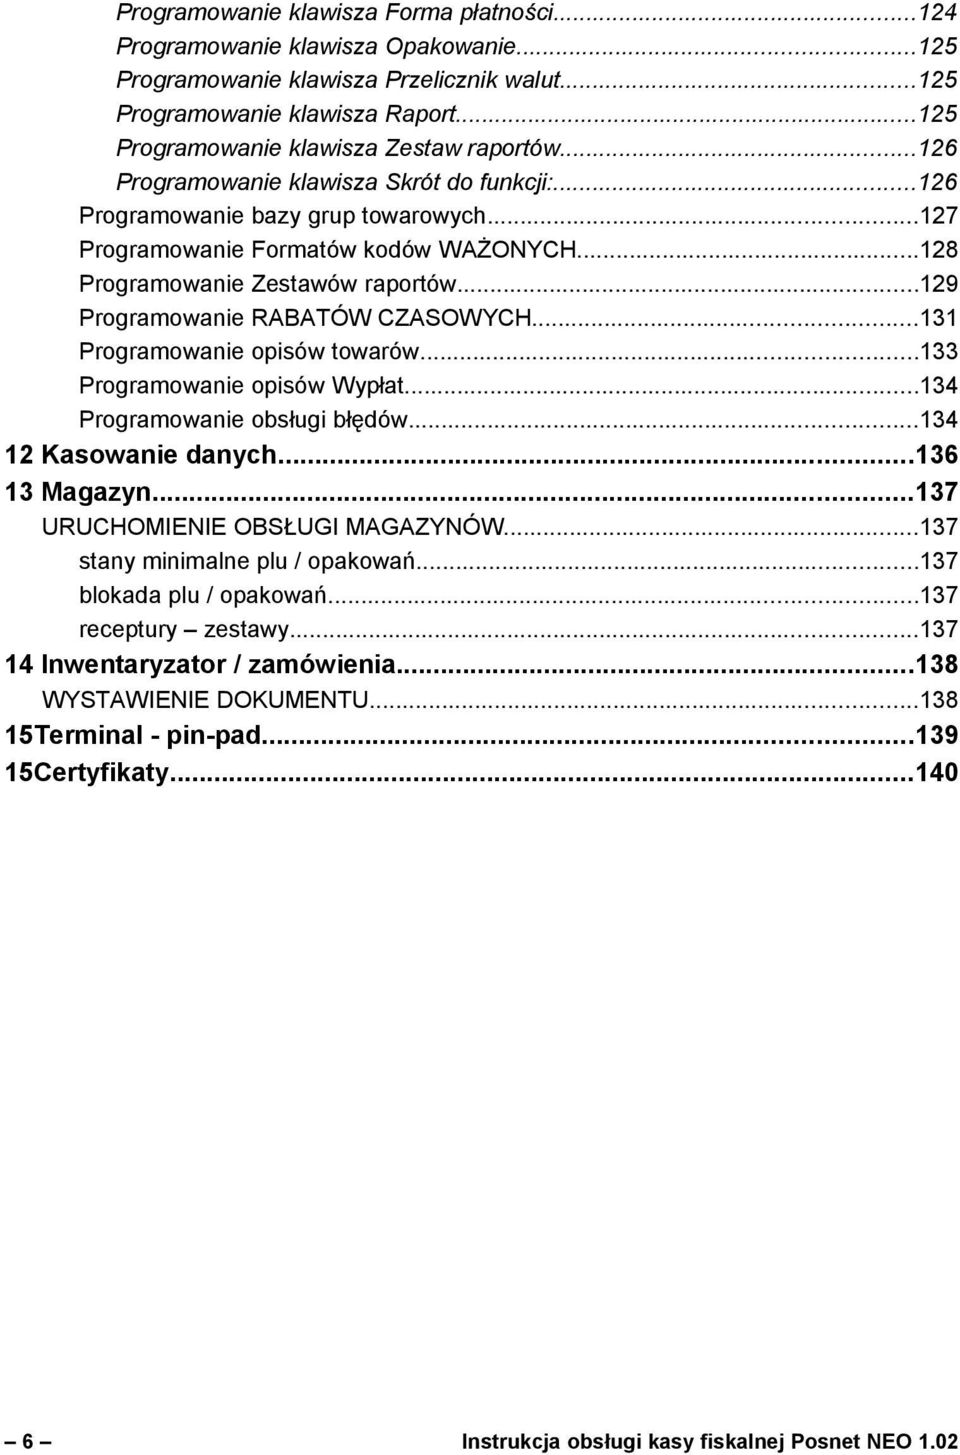 ..128 Programowanie Zestawów raportów...129 Programowanie RABATÓW CZASOWYCH...131 Programowanie opisów towarów...133 Programowanie opisów Wypłat...134 Programowanie obsługi błędów.